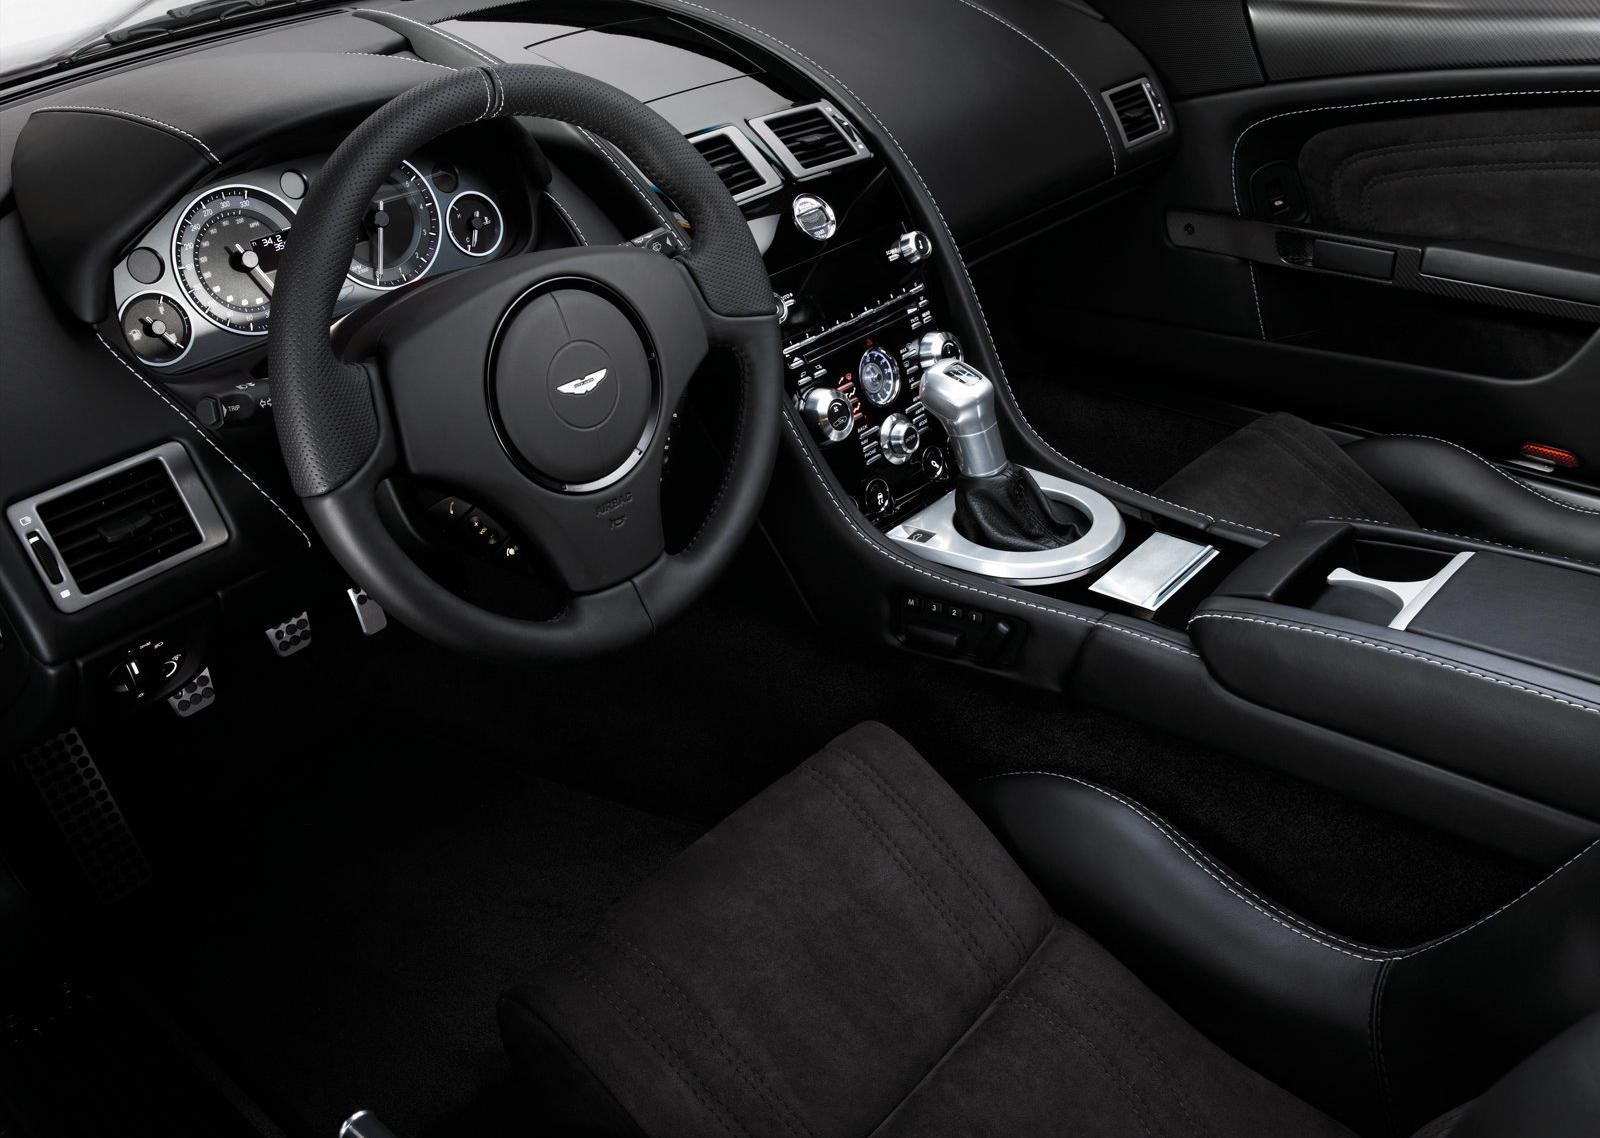 2010 Aston Martin DBS Interior Photos | CarBuzz